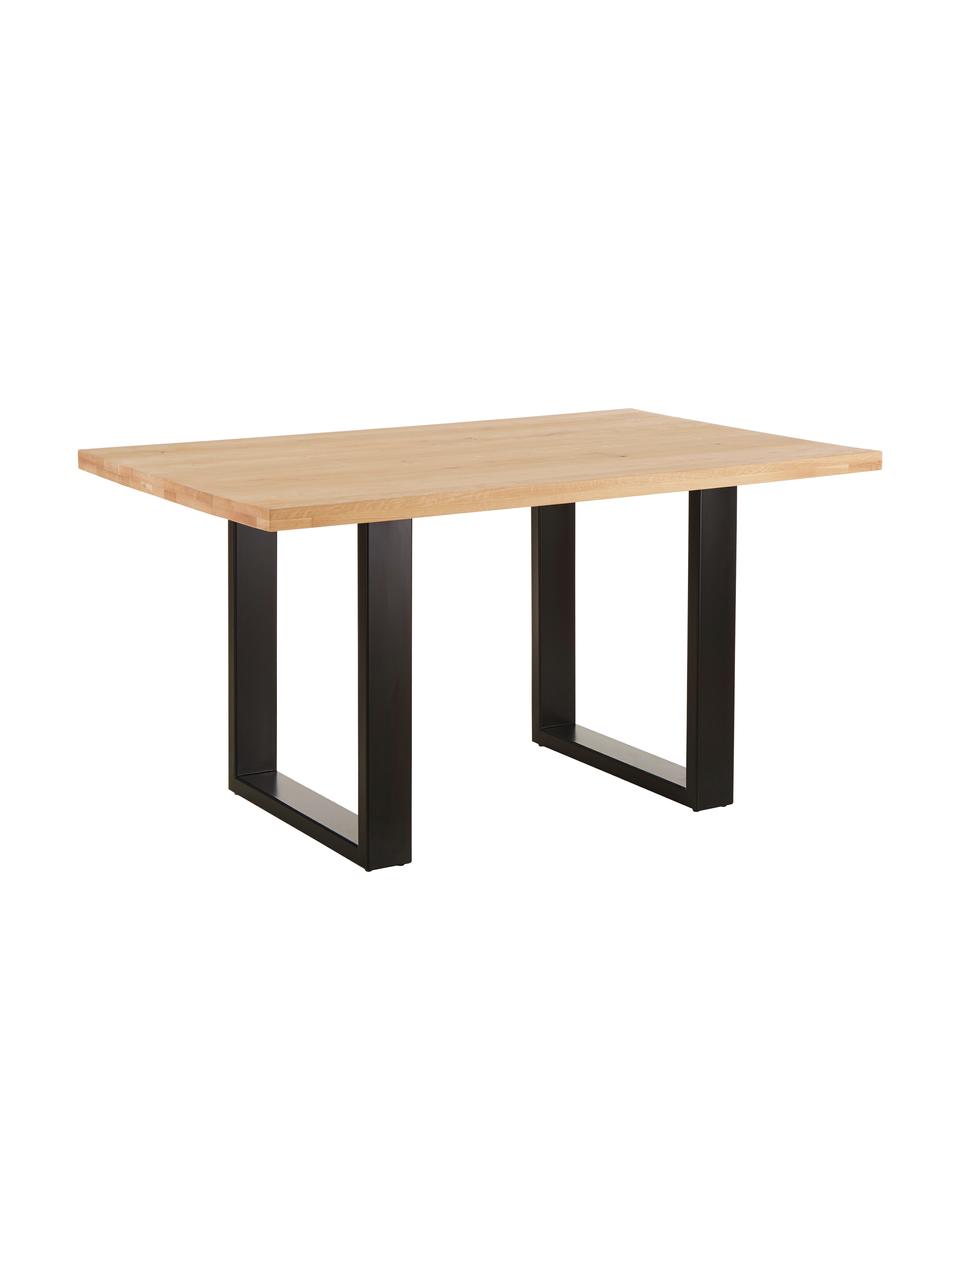 Table en bois massif Oliver, Chêne sauvage, noir